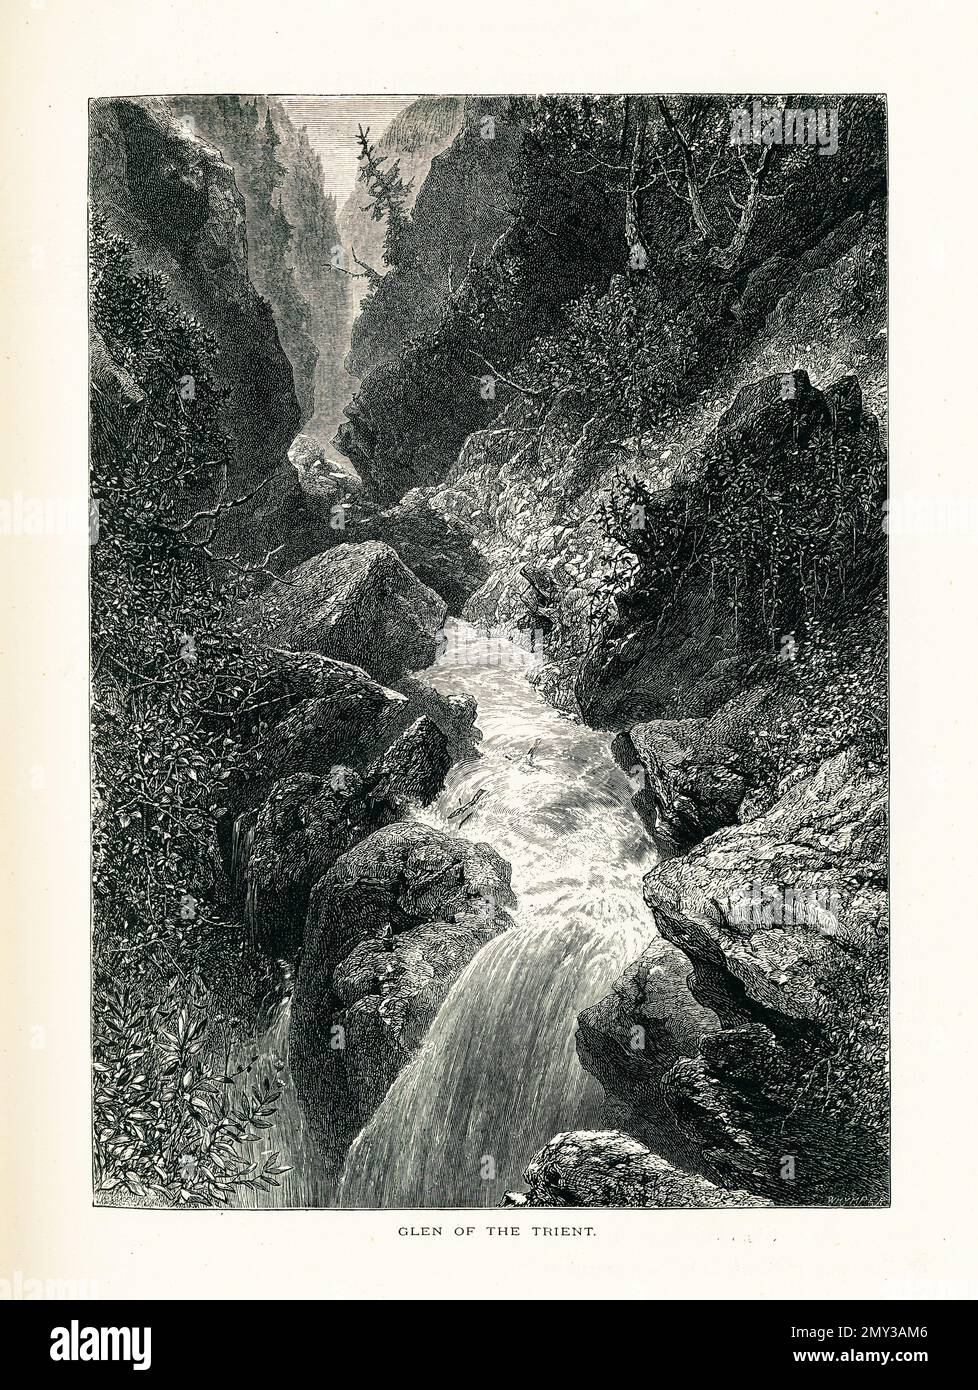 Antica illustrazione di un glen del fiume Trient nel cantone del Vallese in Svizzera. Incisione pubblicata in picturesque Europe, Vol. III (Cassel Foto Stock